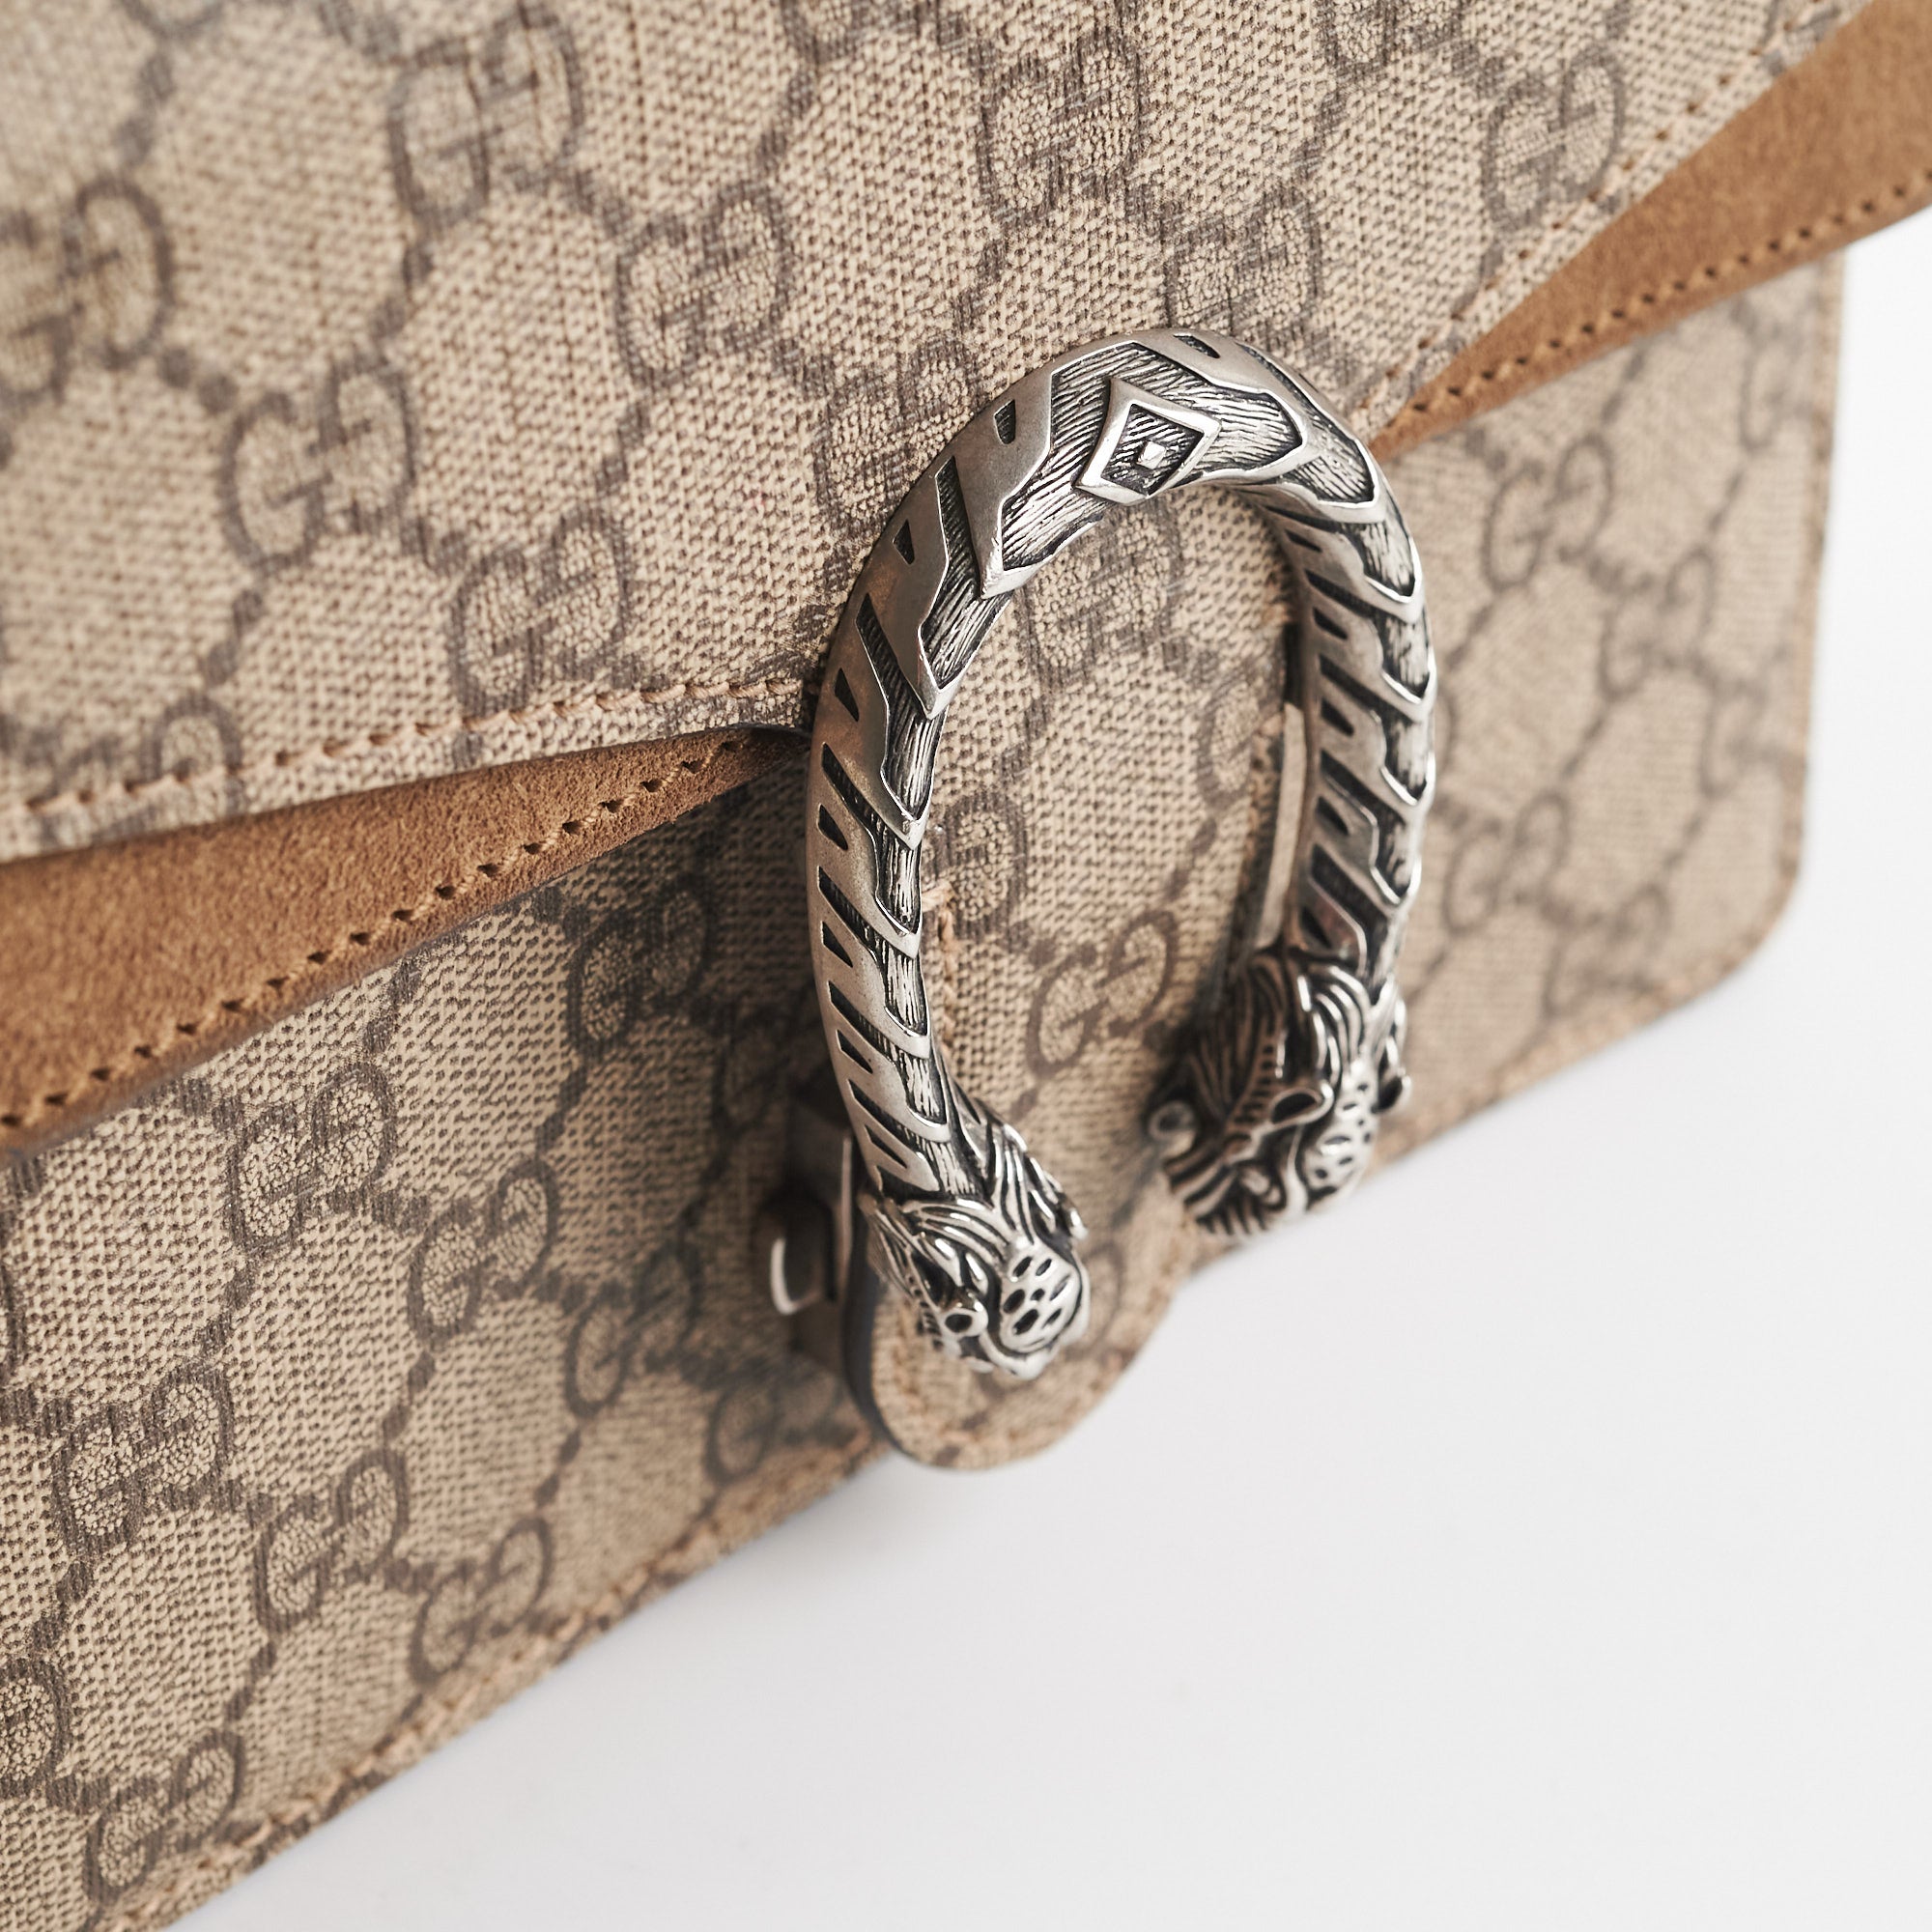 Dionysus GG Supreme Mini Bag, Rent A Gucci Purse